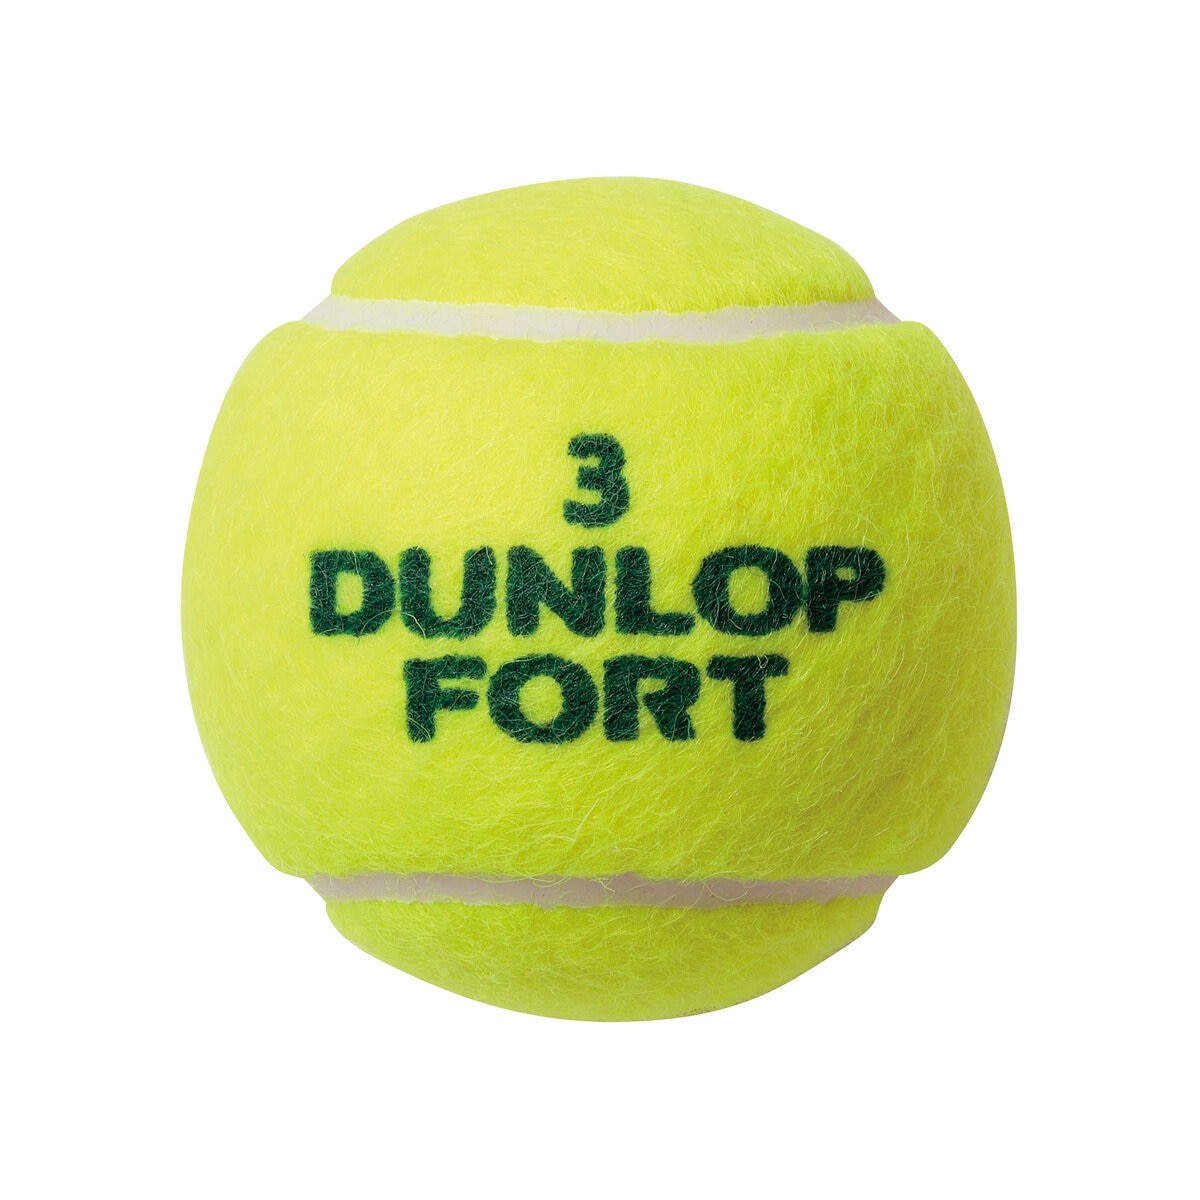 ボール…硬式テニスボール×３つ【特別価格】テニス ボールセット PRADA